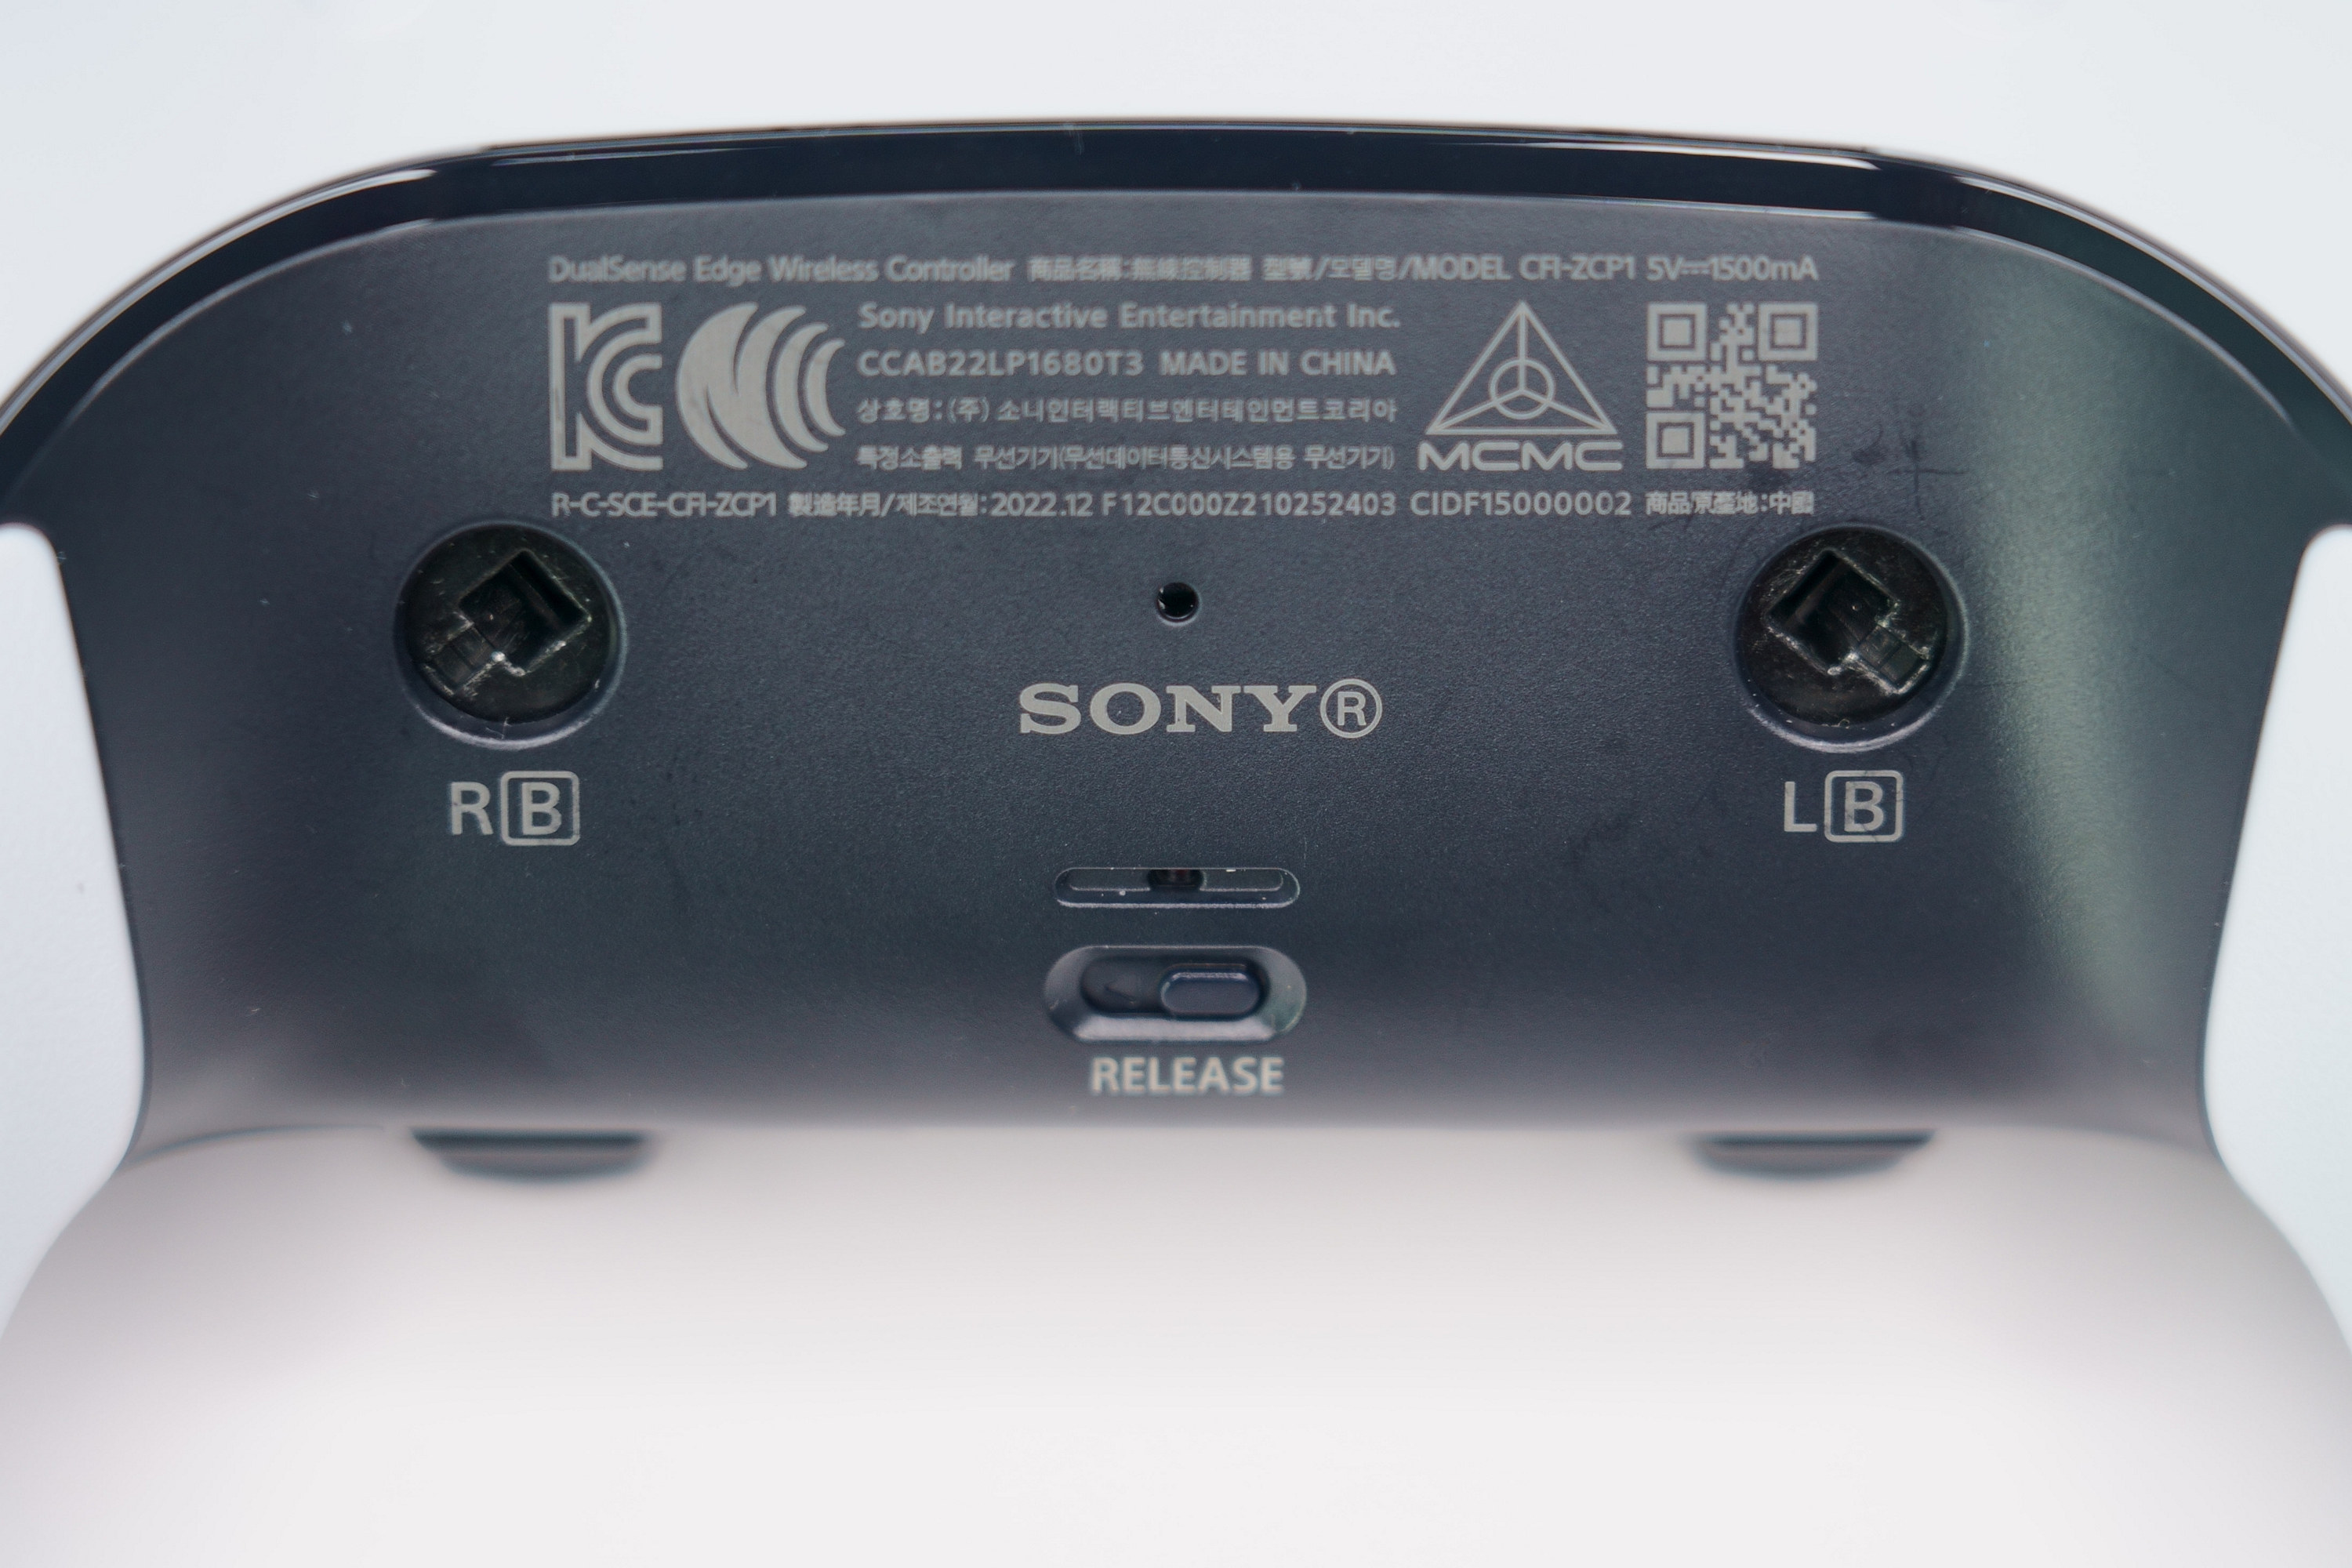 PS5 DualSense Edge 高效能控制器一手开箱 丰富自订功能满足各类型玩家需求插图20